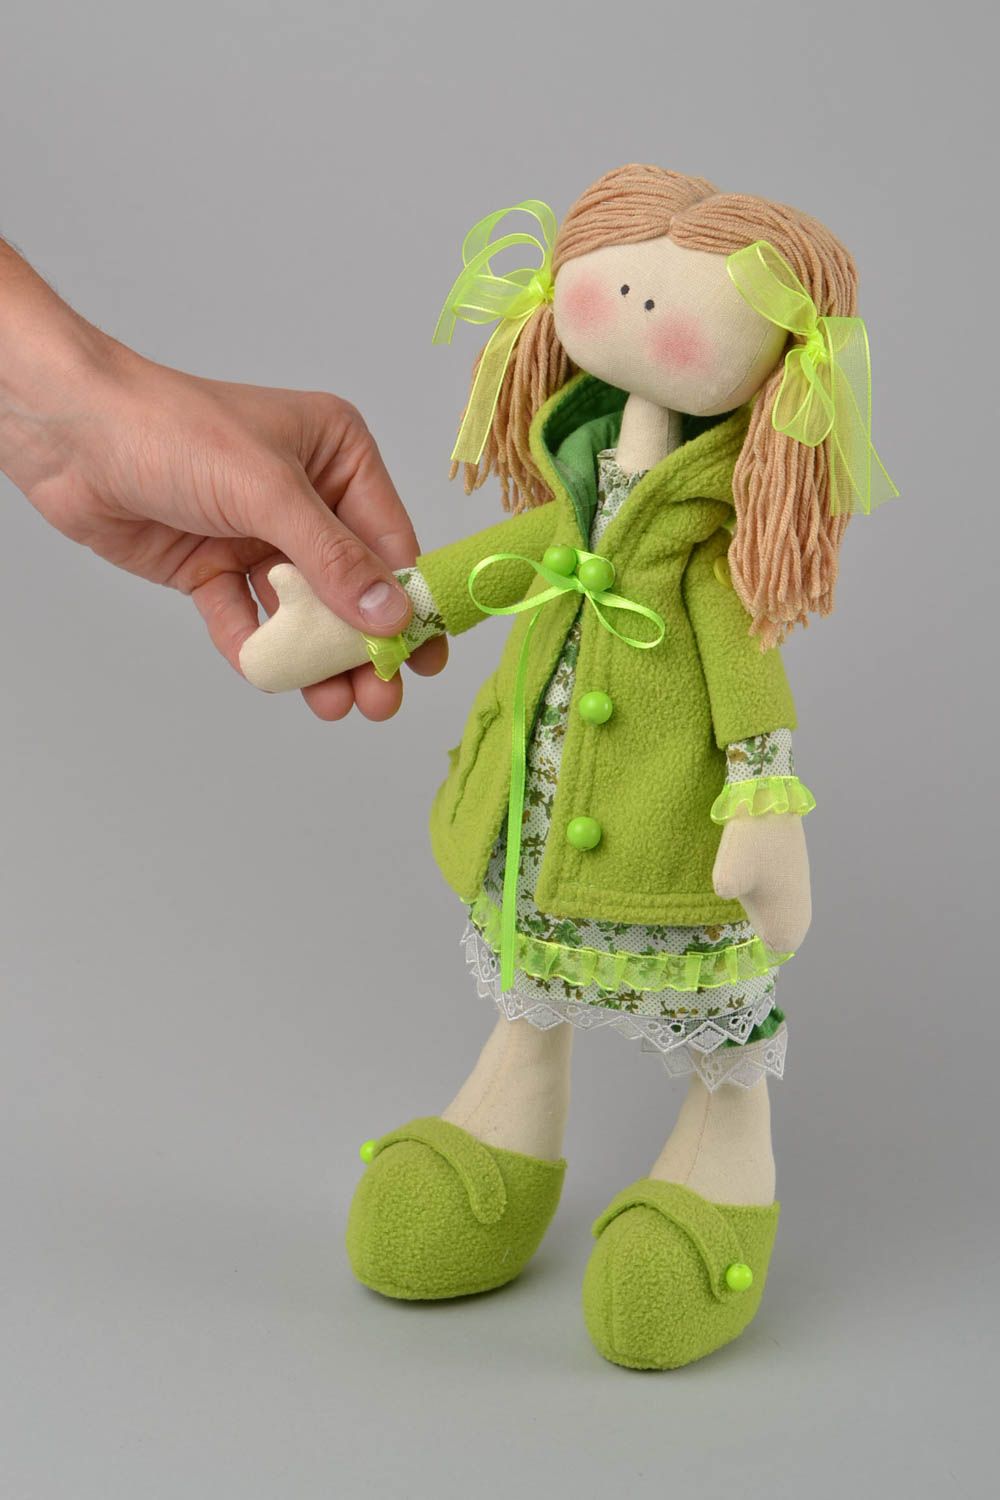 Авторская тканевая кукла в зеленом наряде красивая милая ручной работы для дома фото 2